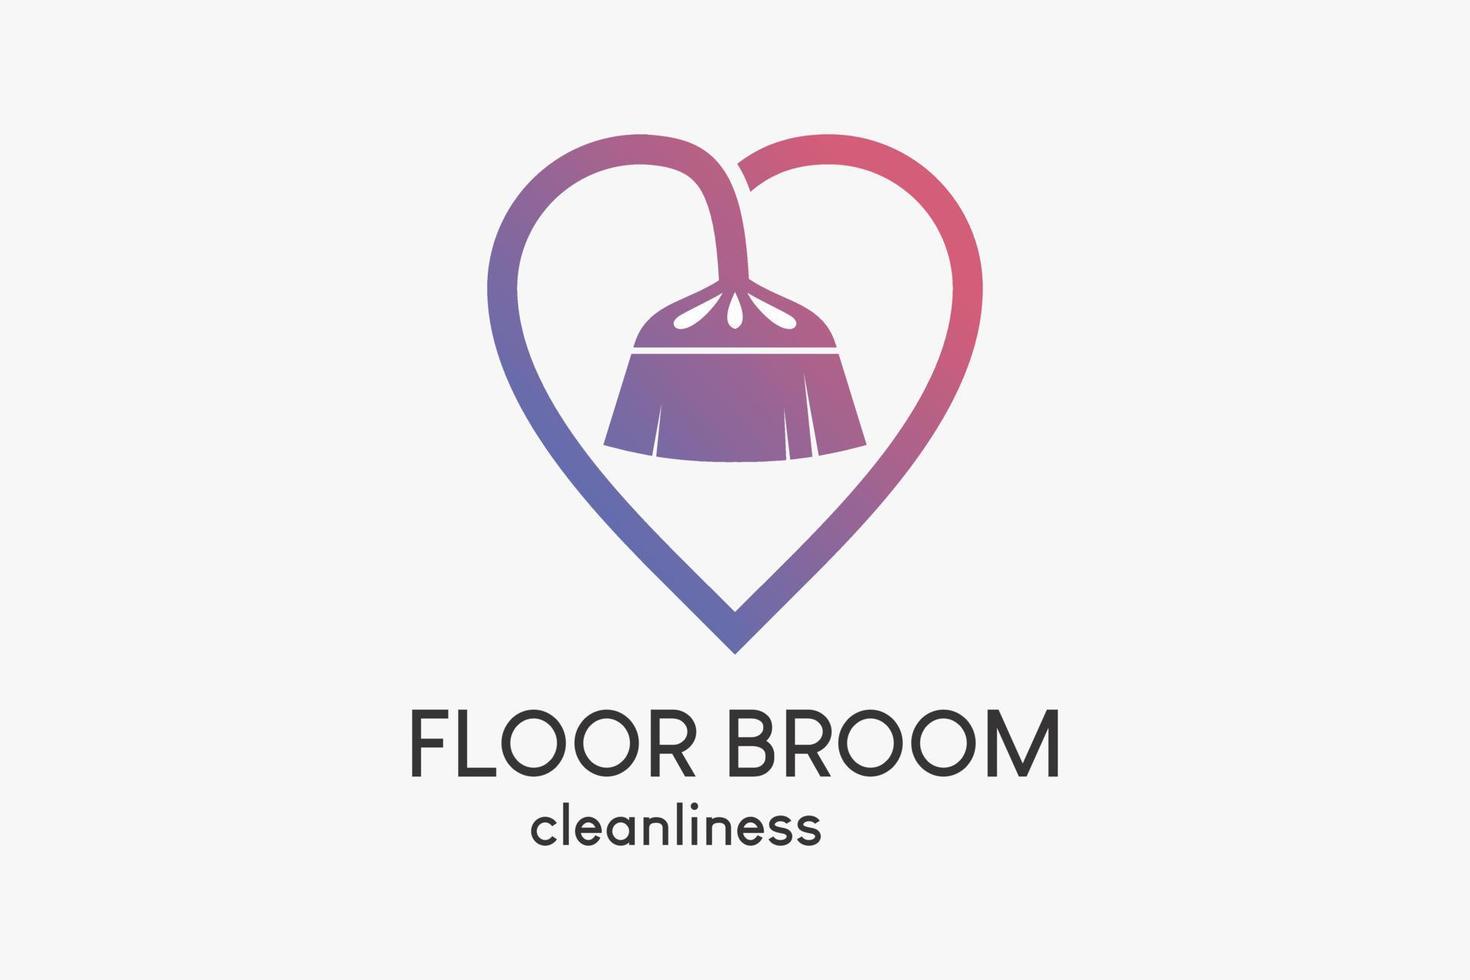 logo spazzata del pavimento o servizio di pulizia della casa con un concetto creativo, silhouette della scopa del pavimento combinata con il cuore vettore